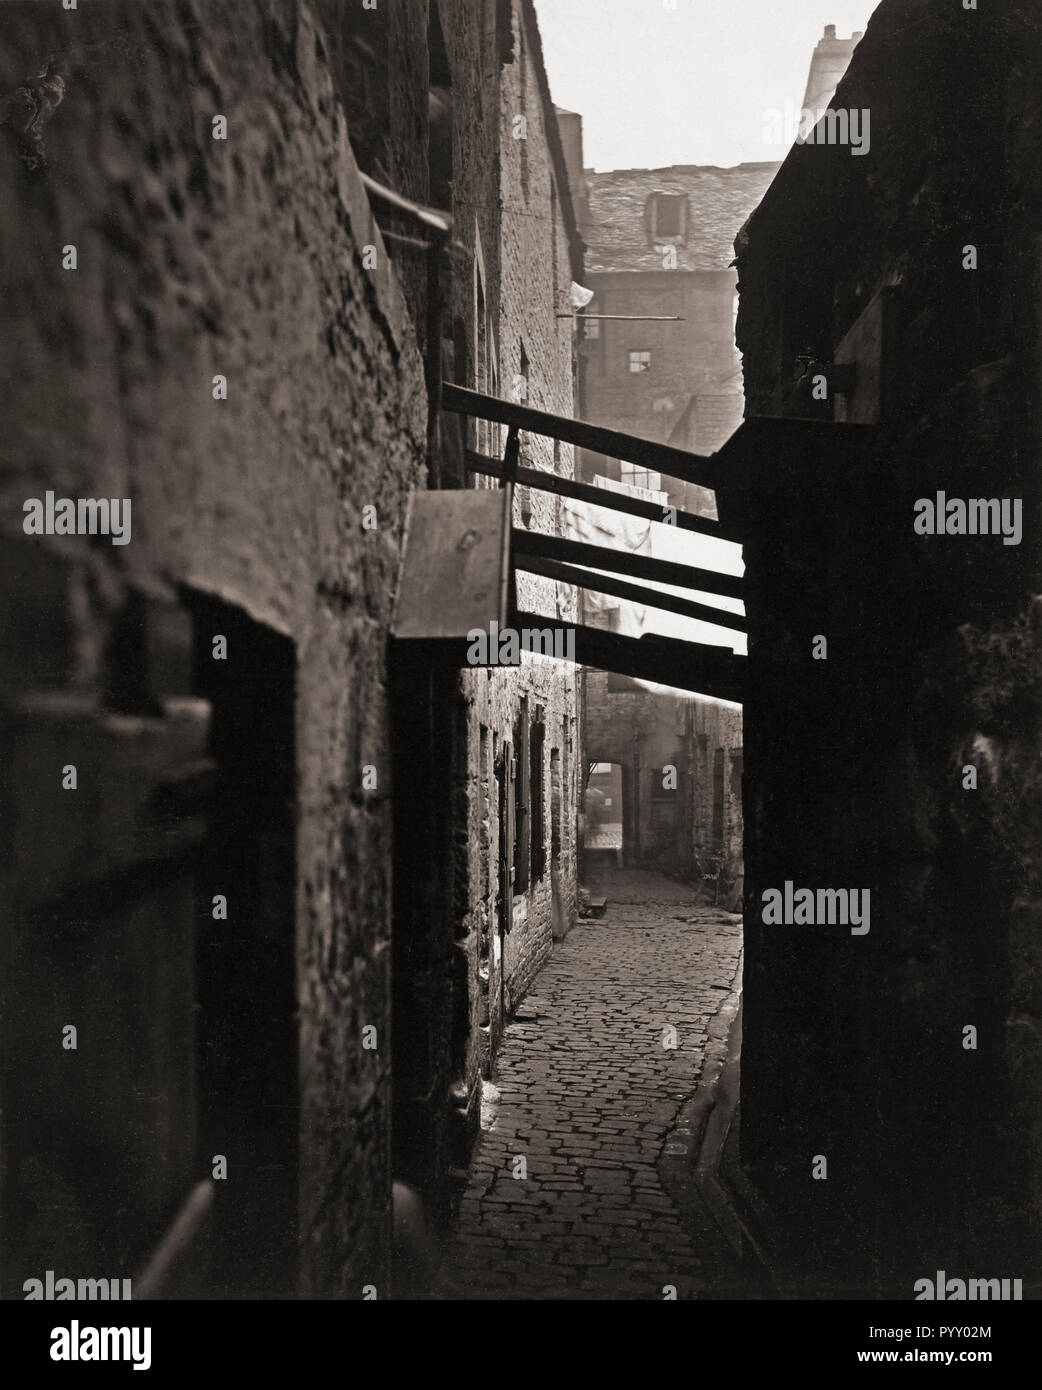 A proximité, Numéro 83 High Street, Glasgow, Écosse dans les années 1870. Photographie de l'ancienne ferme et les rues de Glasgow, par le photographe écossais Thomas Annan 1829-1887. Banque D'Images